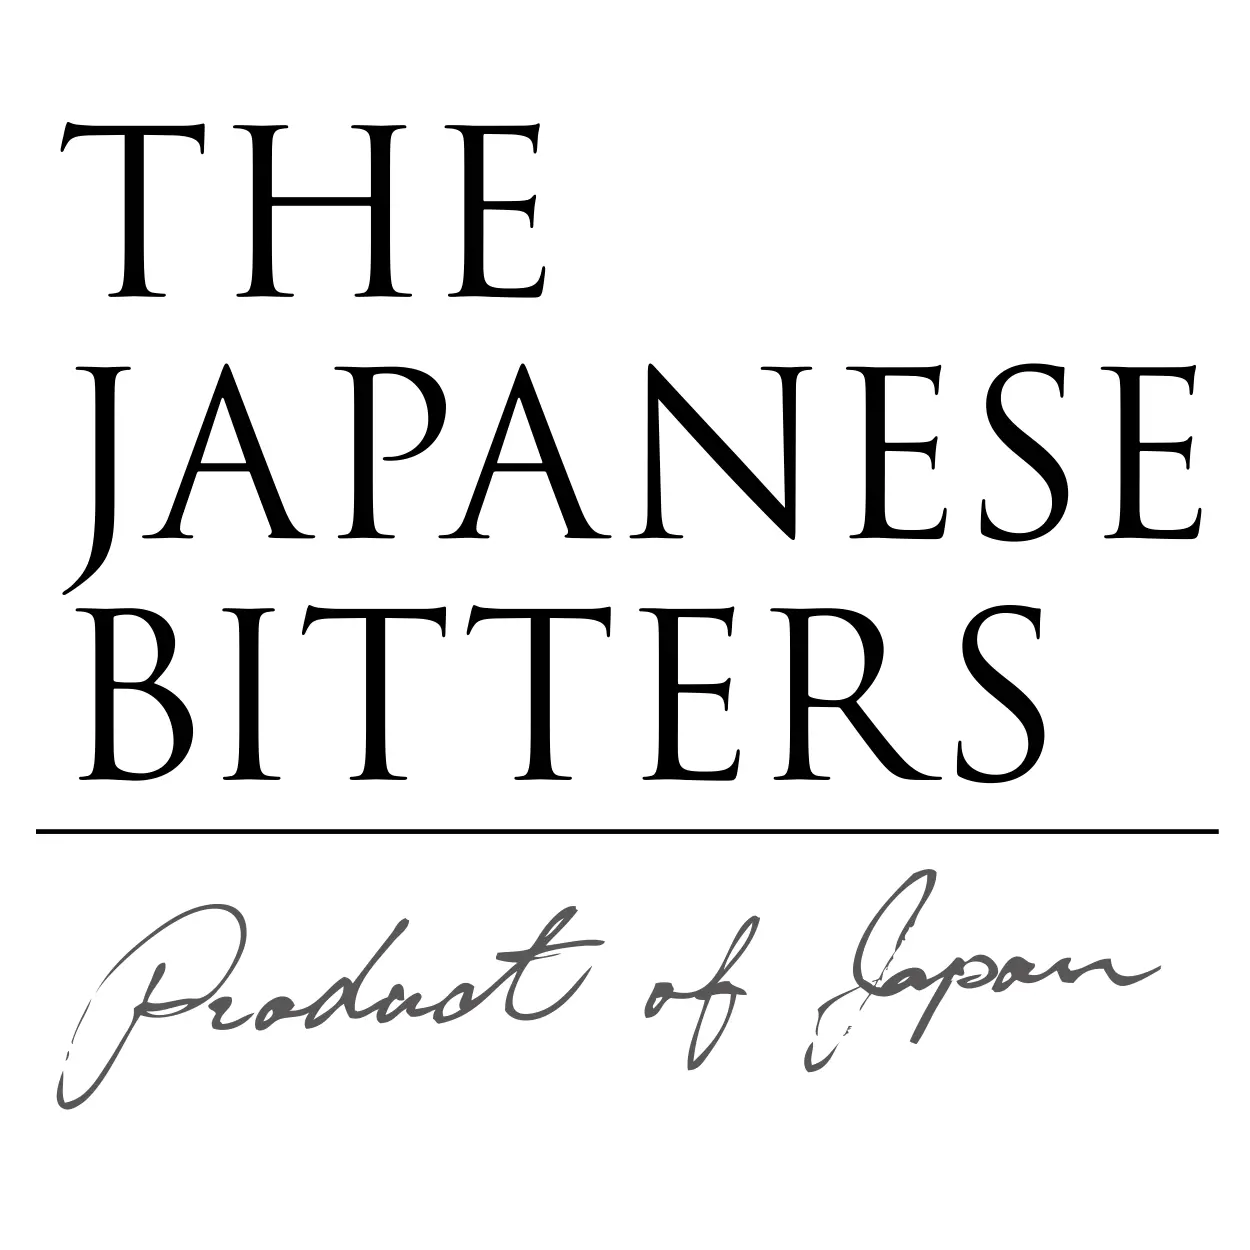 Japanese Bitter